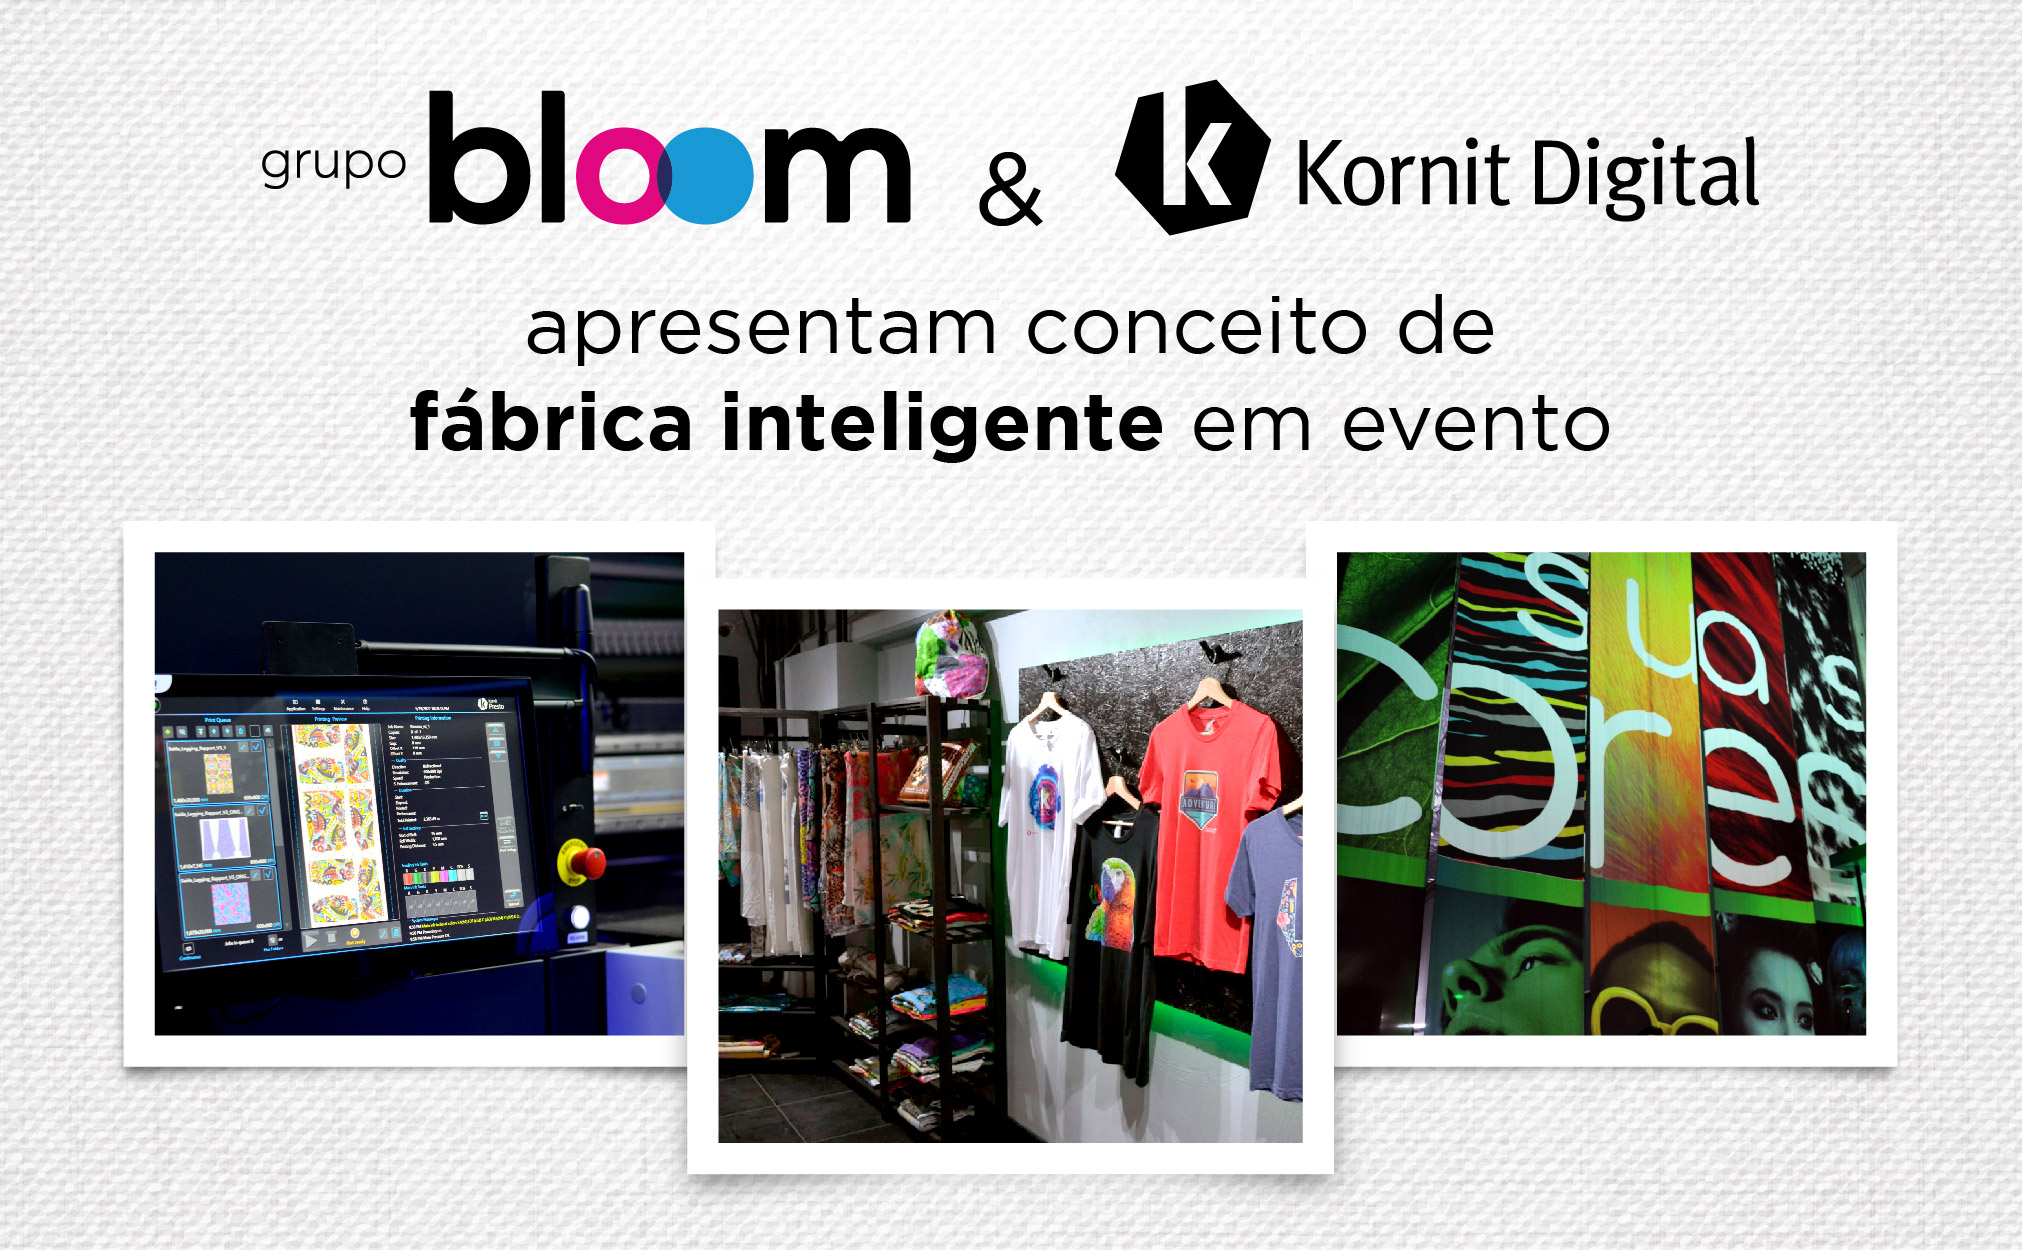 Kornit Digital promove evento sobre os novos desafios da indústria têxtil